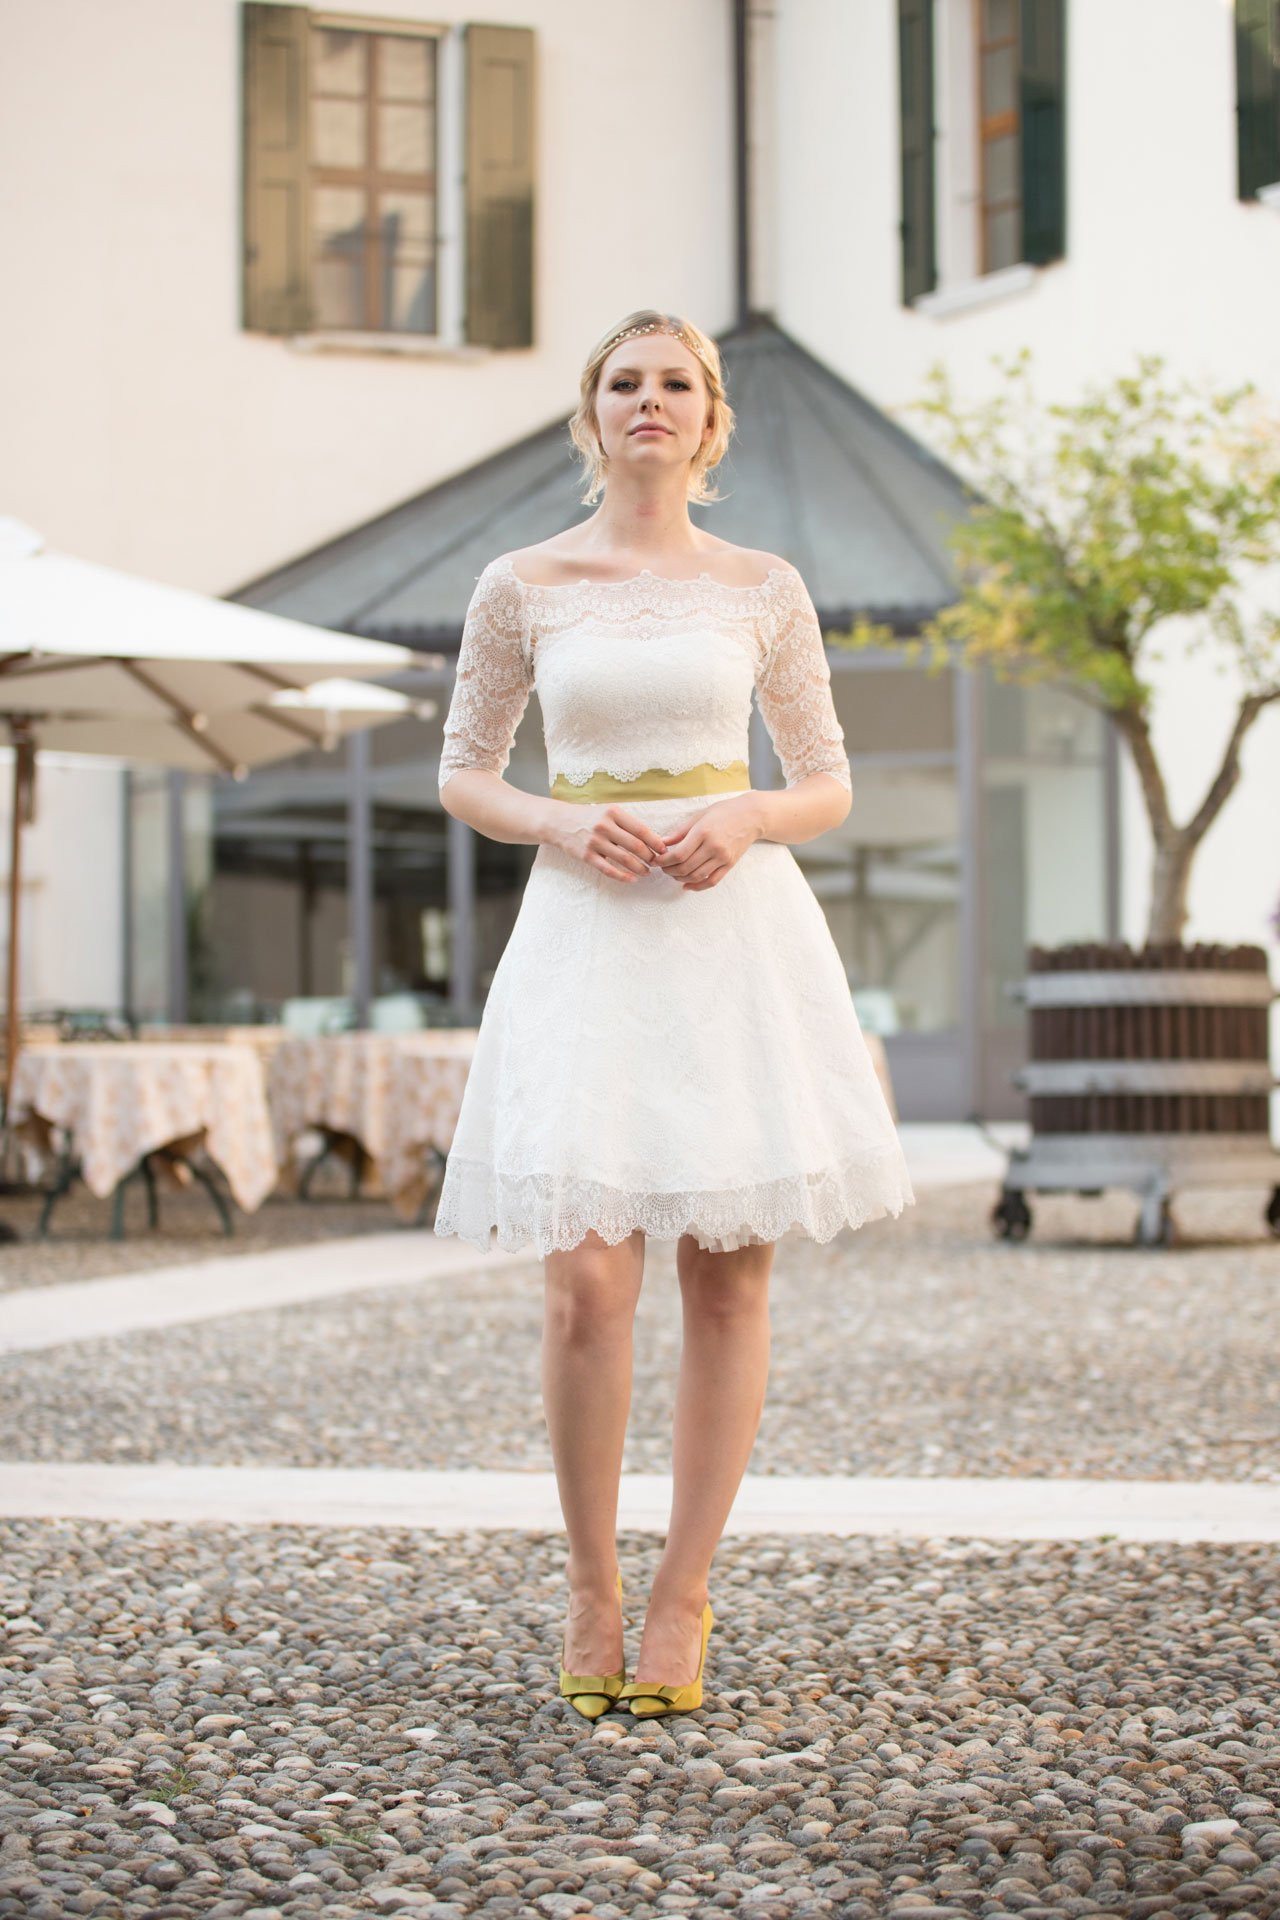 Hochzeitskleid Petticoat
 Brautkleid Petticoat kurzes Spitzenkleid im 50er Jahre Stil